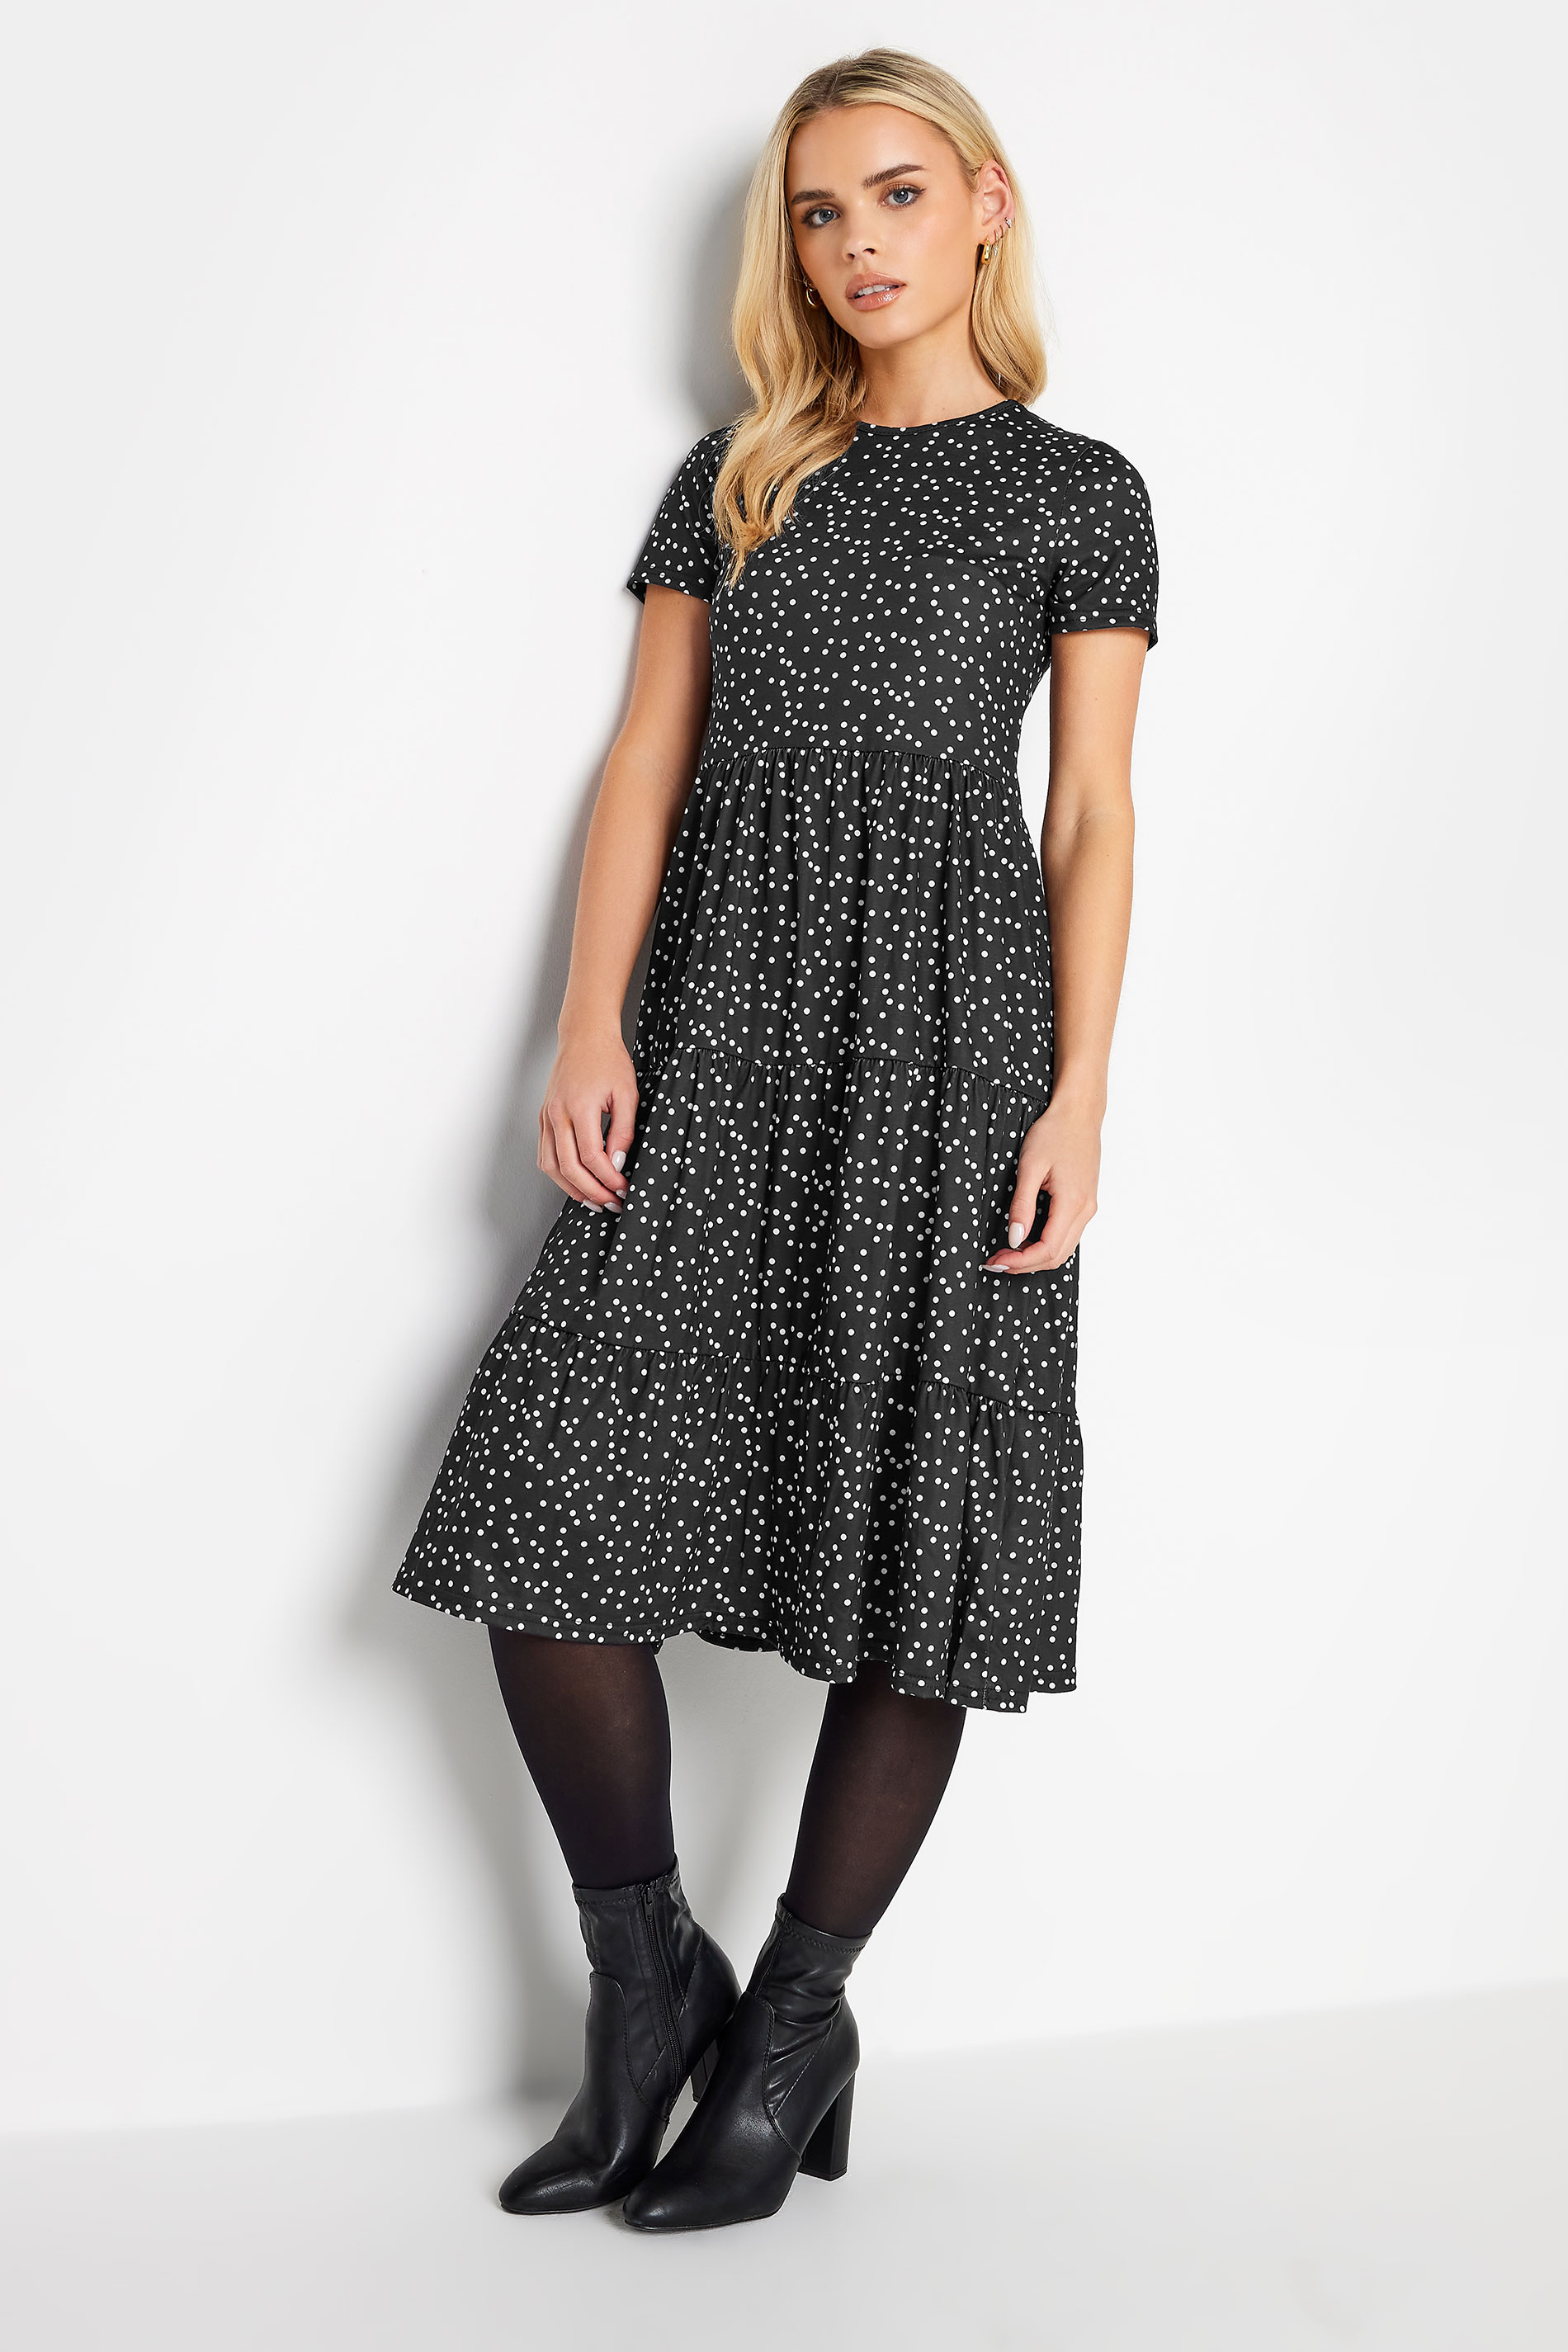 PixieGirl Black Polka Dot Tiered Midi Dress | PixieGirl 2